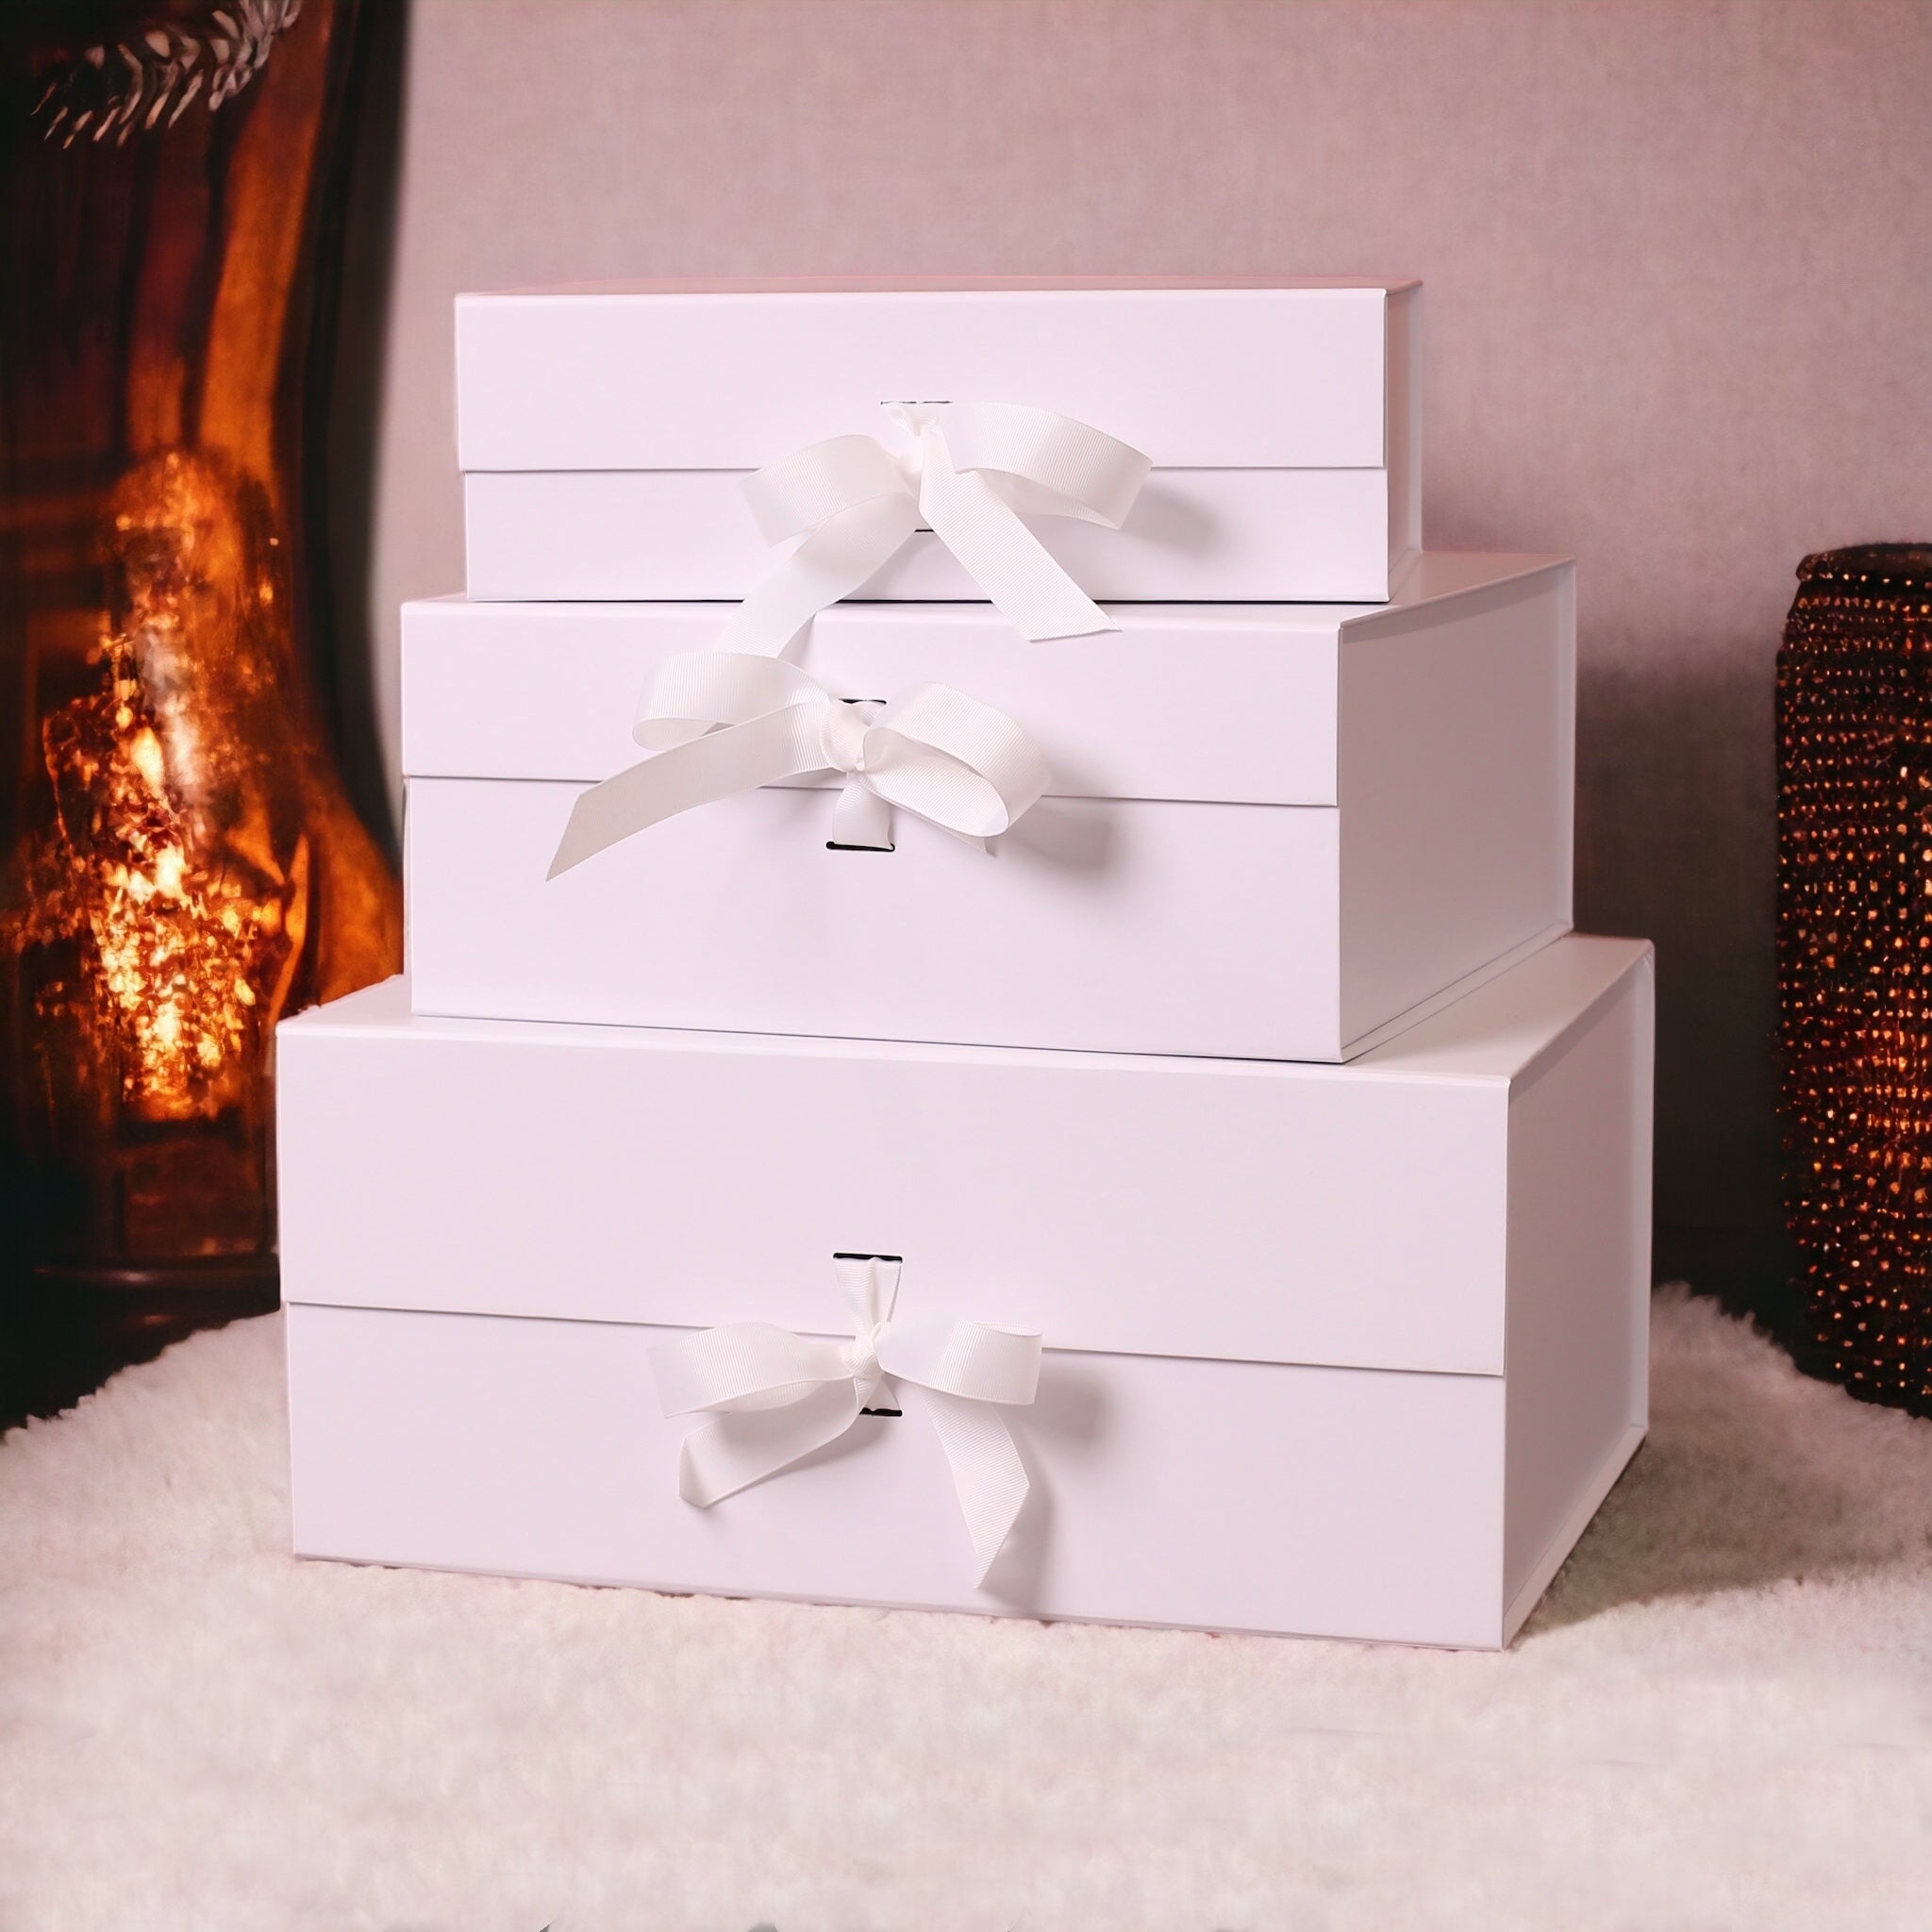 Wine Duo Gift Box: Premium English Pair